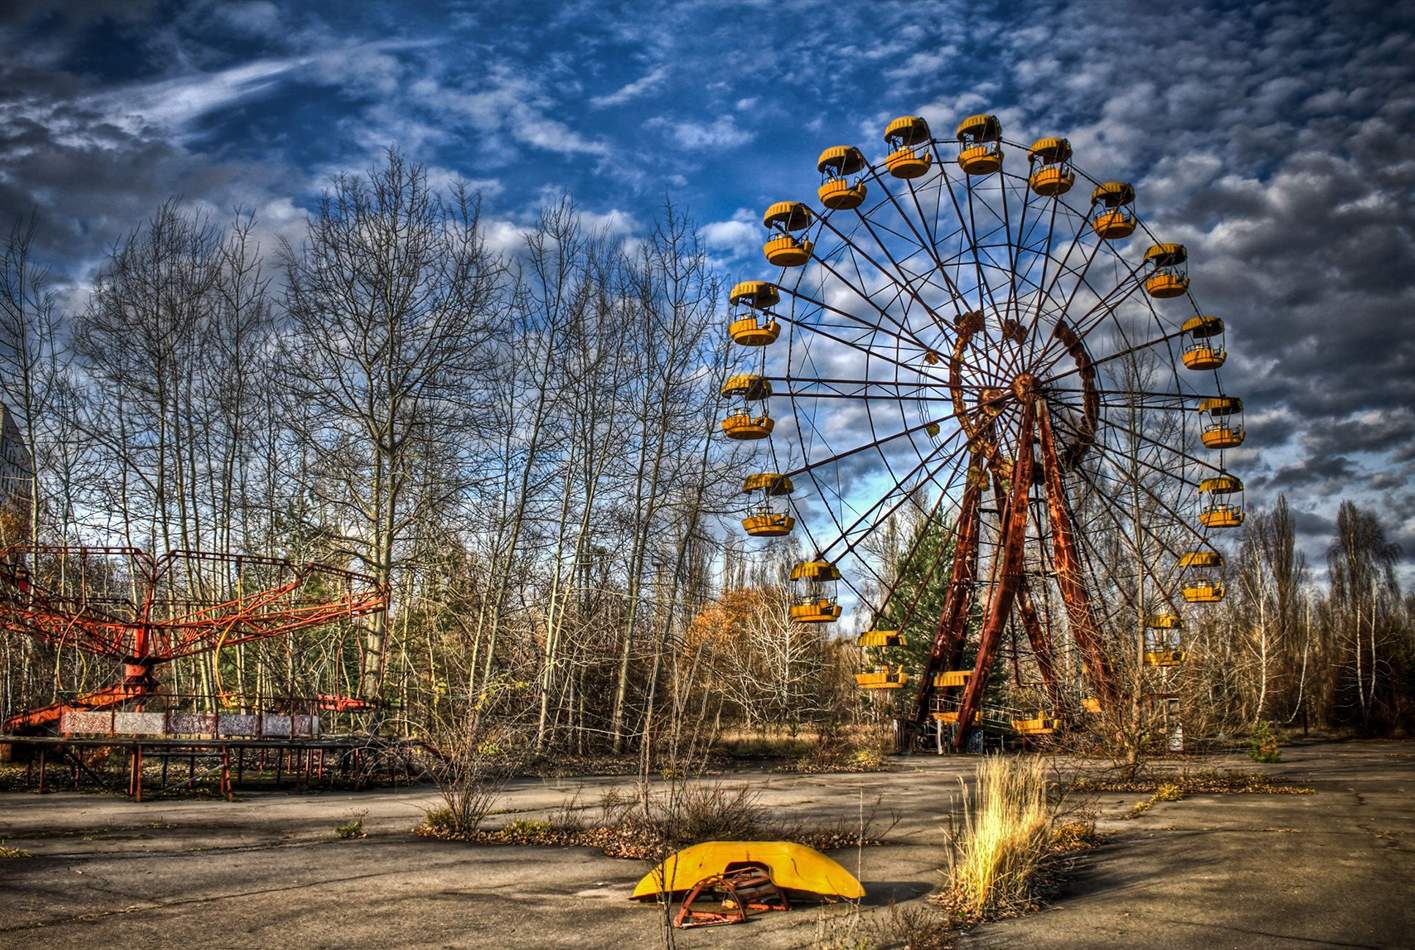 Тур поездка и экскурсия в Чернобыль, Припять